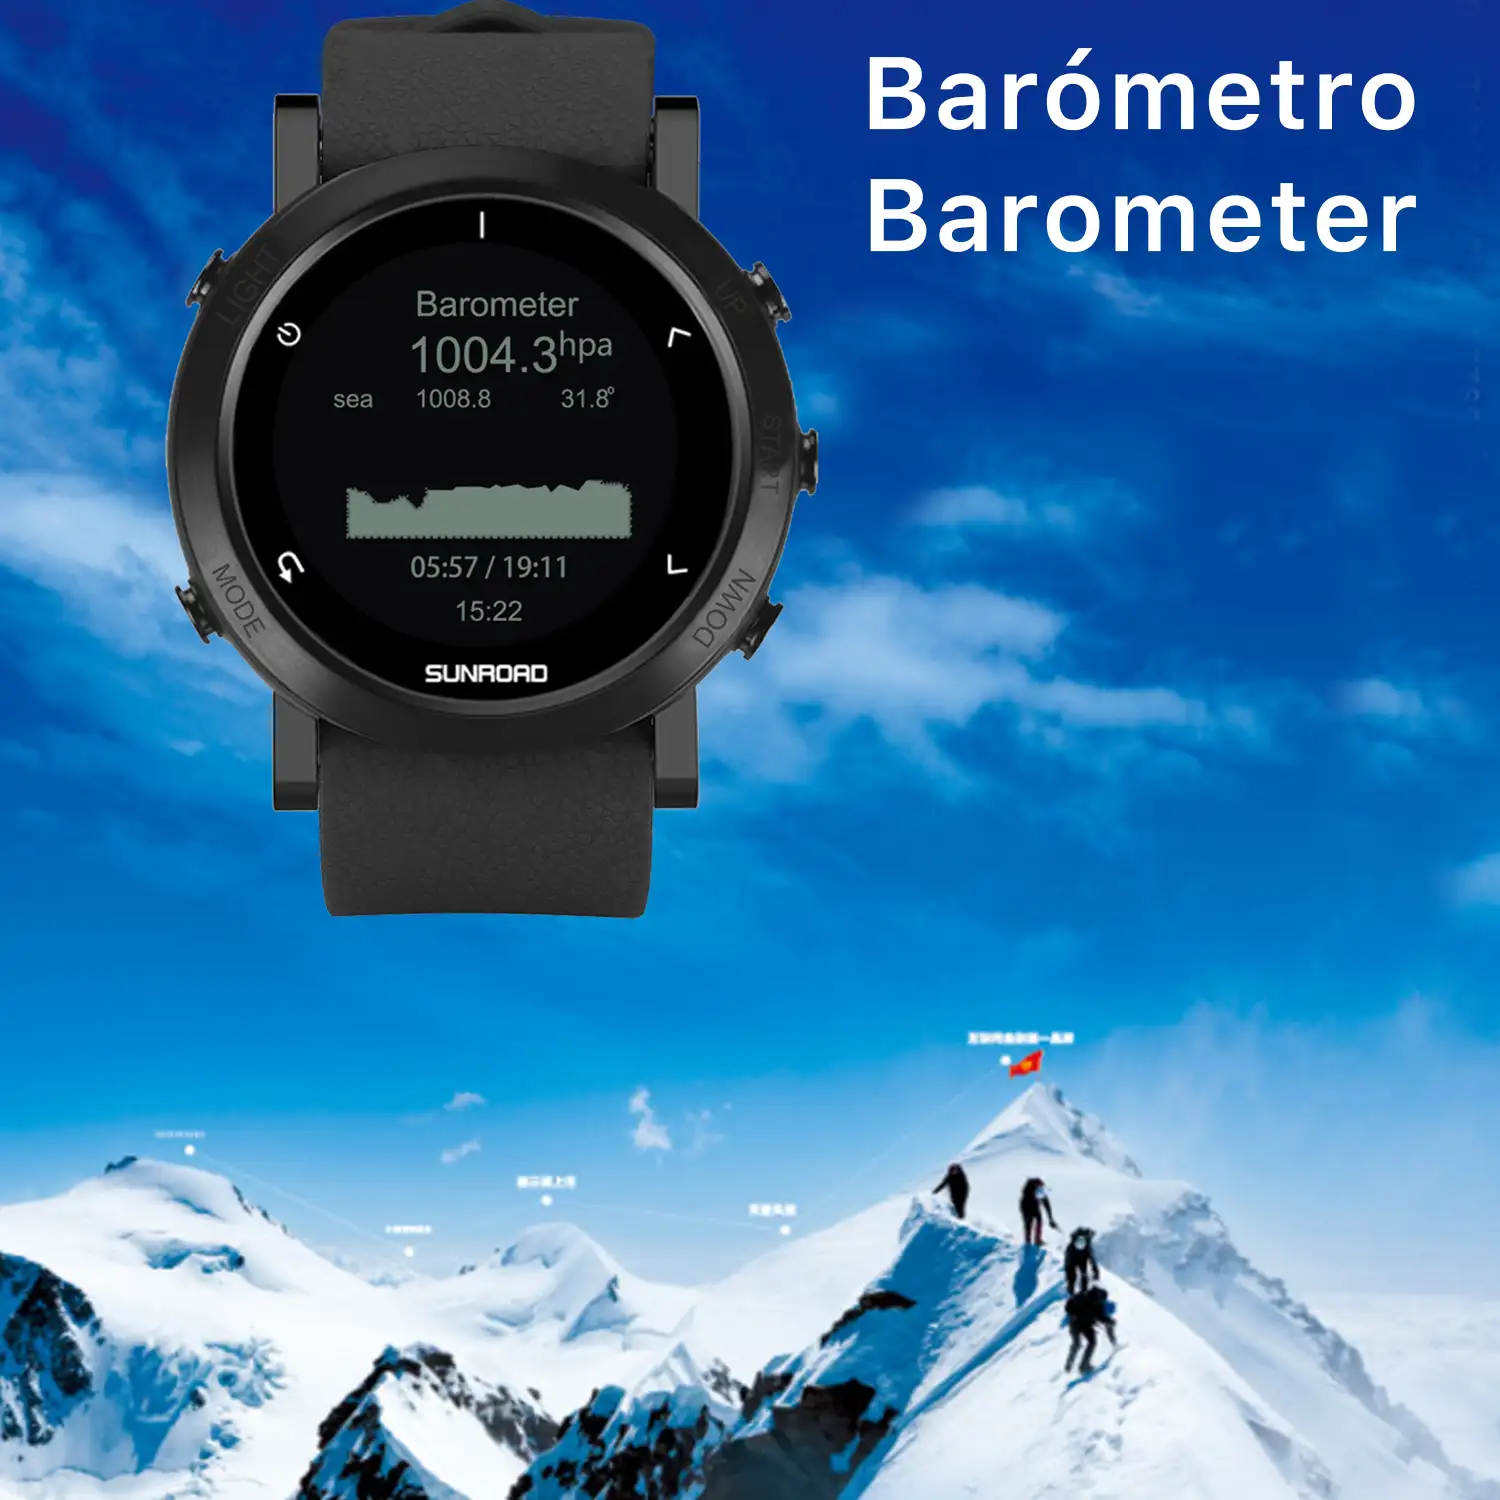 Smartwatch FR935 con localización GPS, sumergible 5 atm. Varios modos deportivos, incluye triatlón. Altímetro, barómetro, brújula, previsión meteorológica.